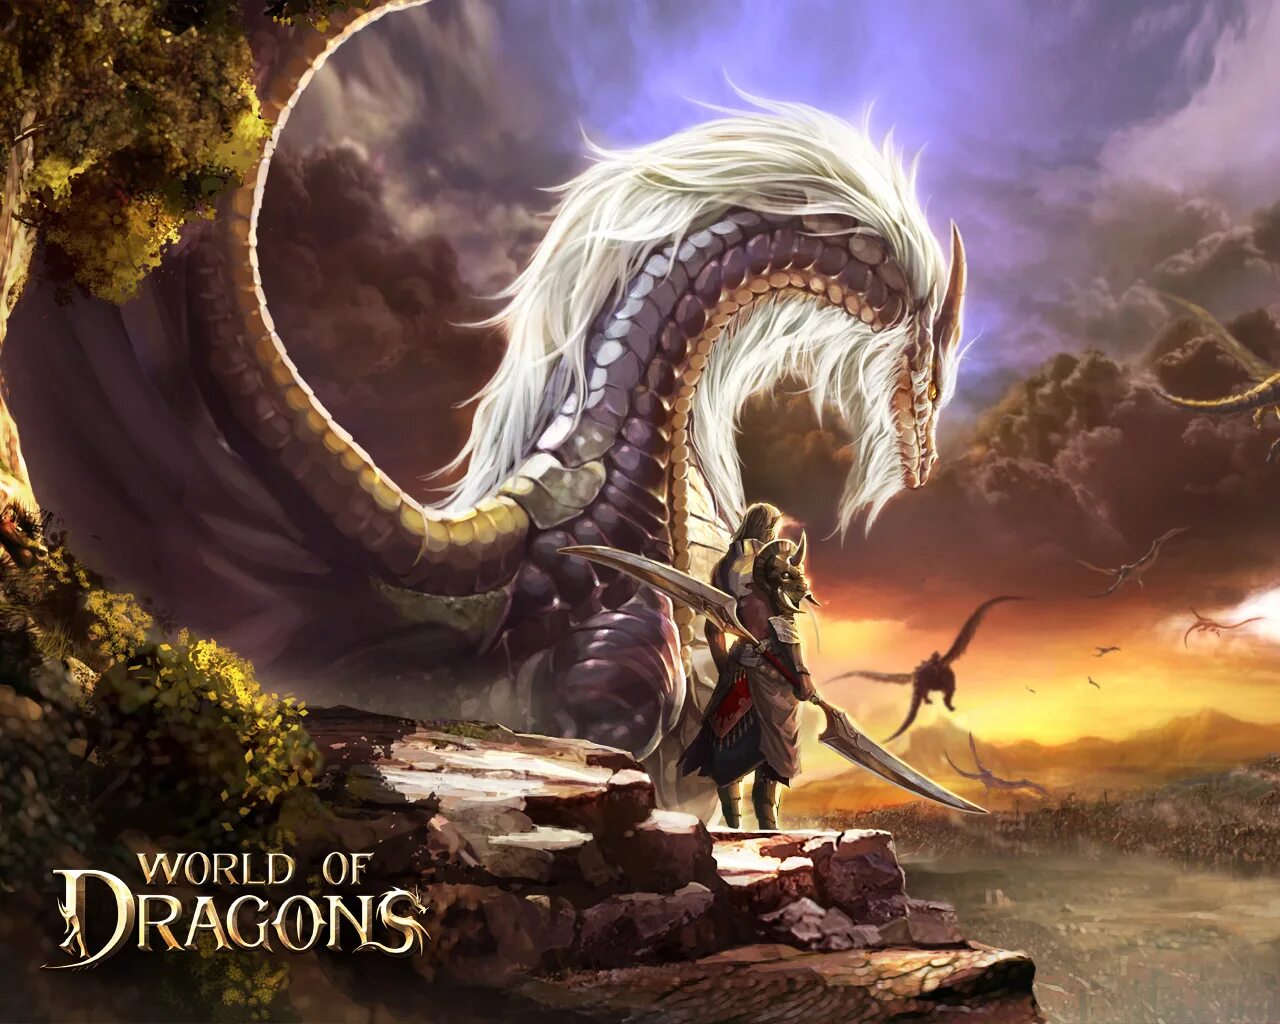 Дракон ворлд. Мир драконов игра. World of Dragons драконы. ММОРПГ World of Dragons. Игровой мир с драконами.